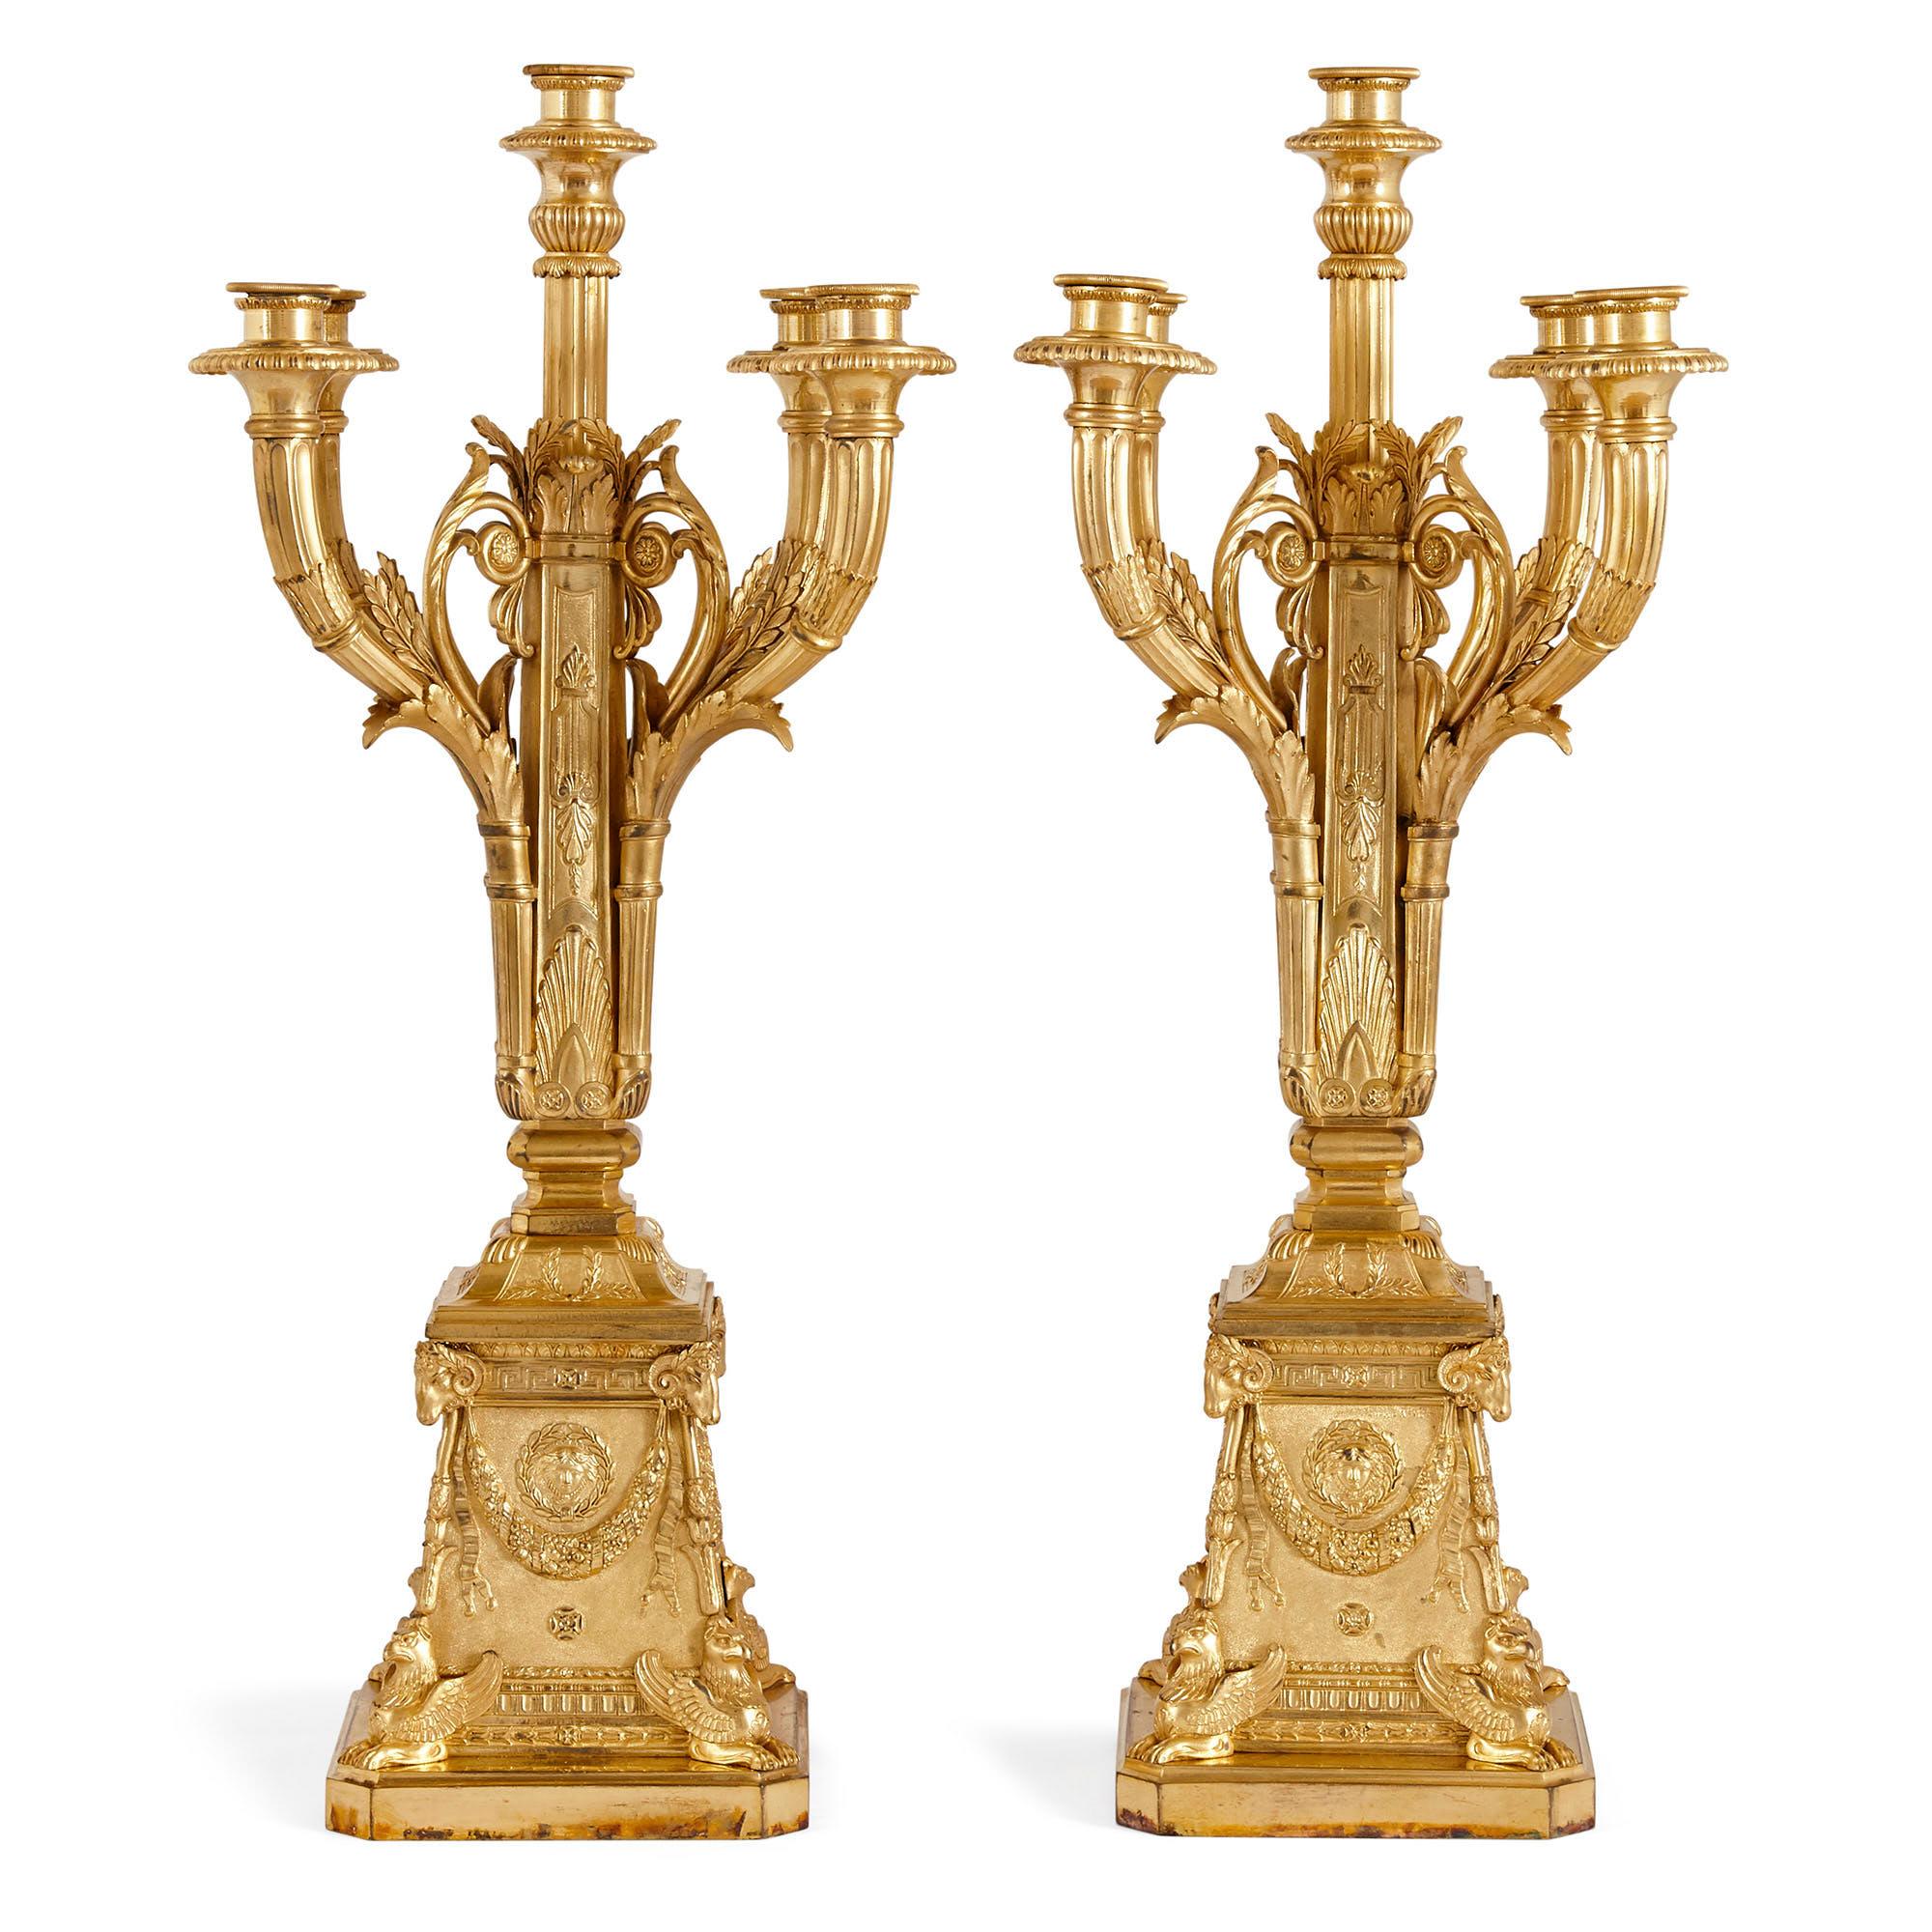 Paar vergoldete Bronzekandelaber im neoklassischen Stil von Susse Frères
Französisch, um 1900
Maße: Höhe 62cm, Breite 24cm, Tiefe 24cm

Jeder Kandelaber dieses Paares ist im Louis XVI-Stil gestaltet und aus feiner vergoldeter Bronze gefertigt.